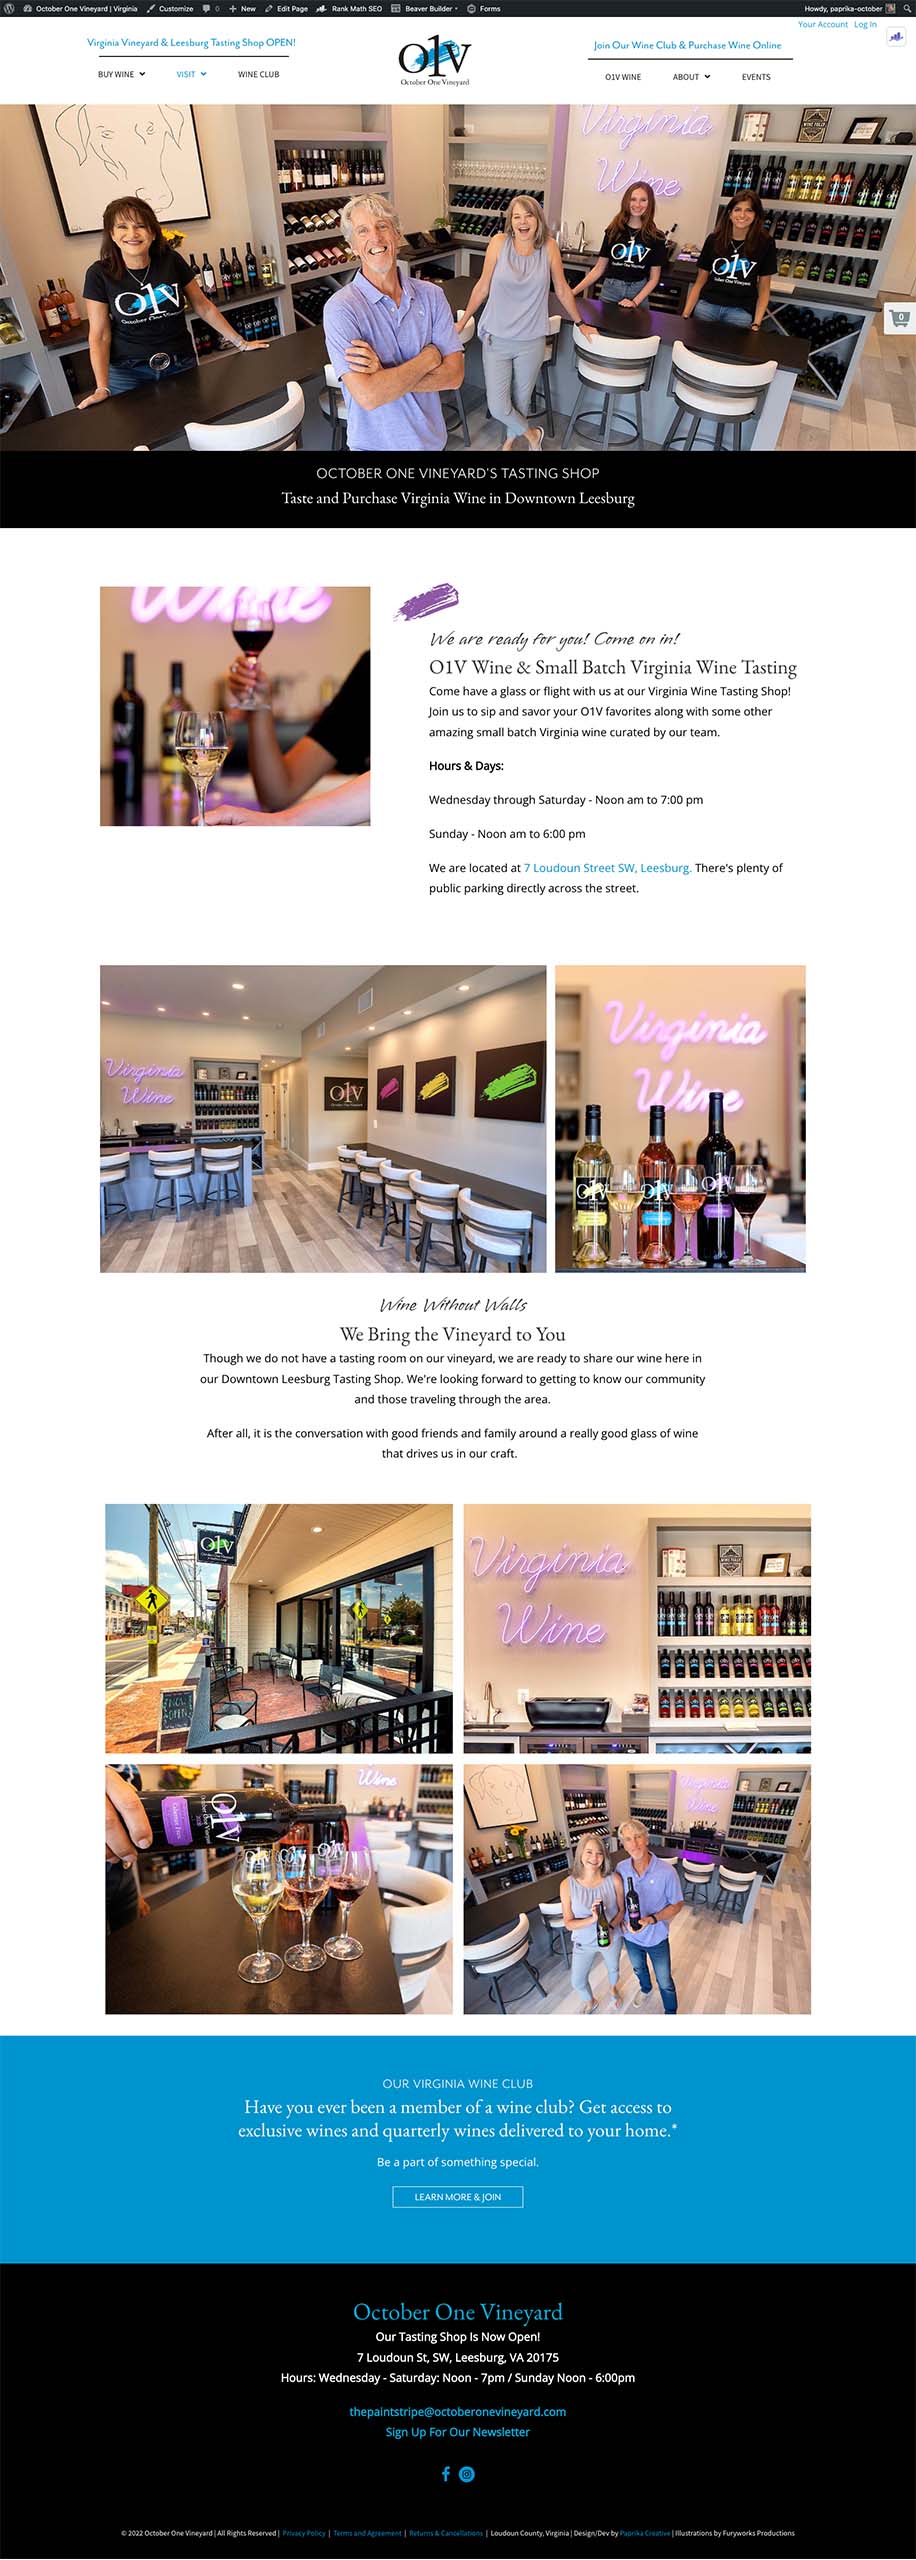 Leesburg Wine Tasting Room website design showing landing page